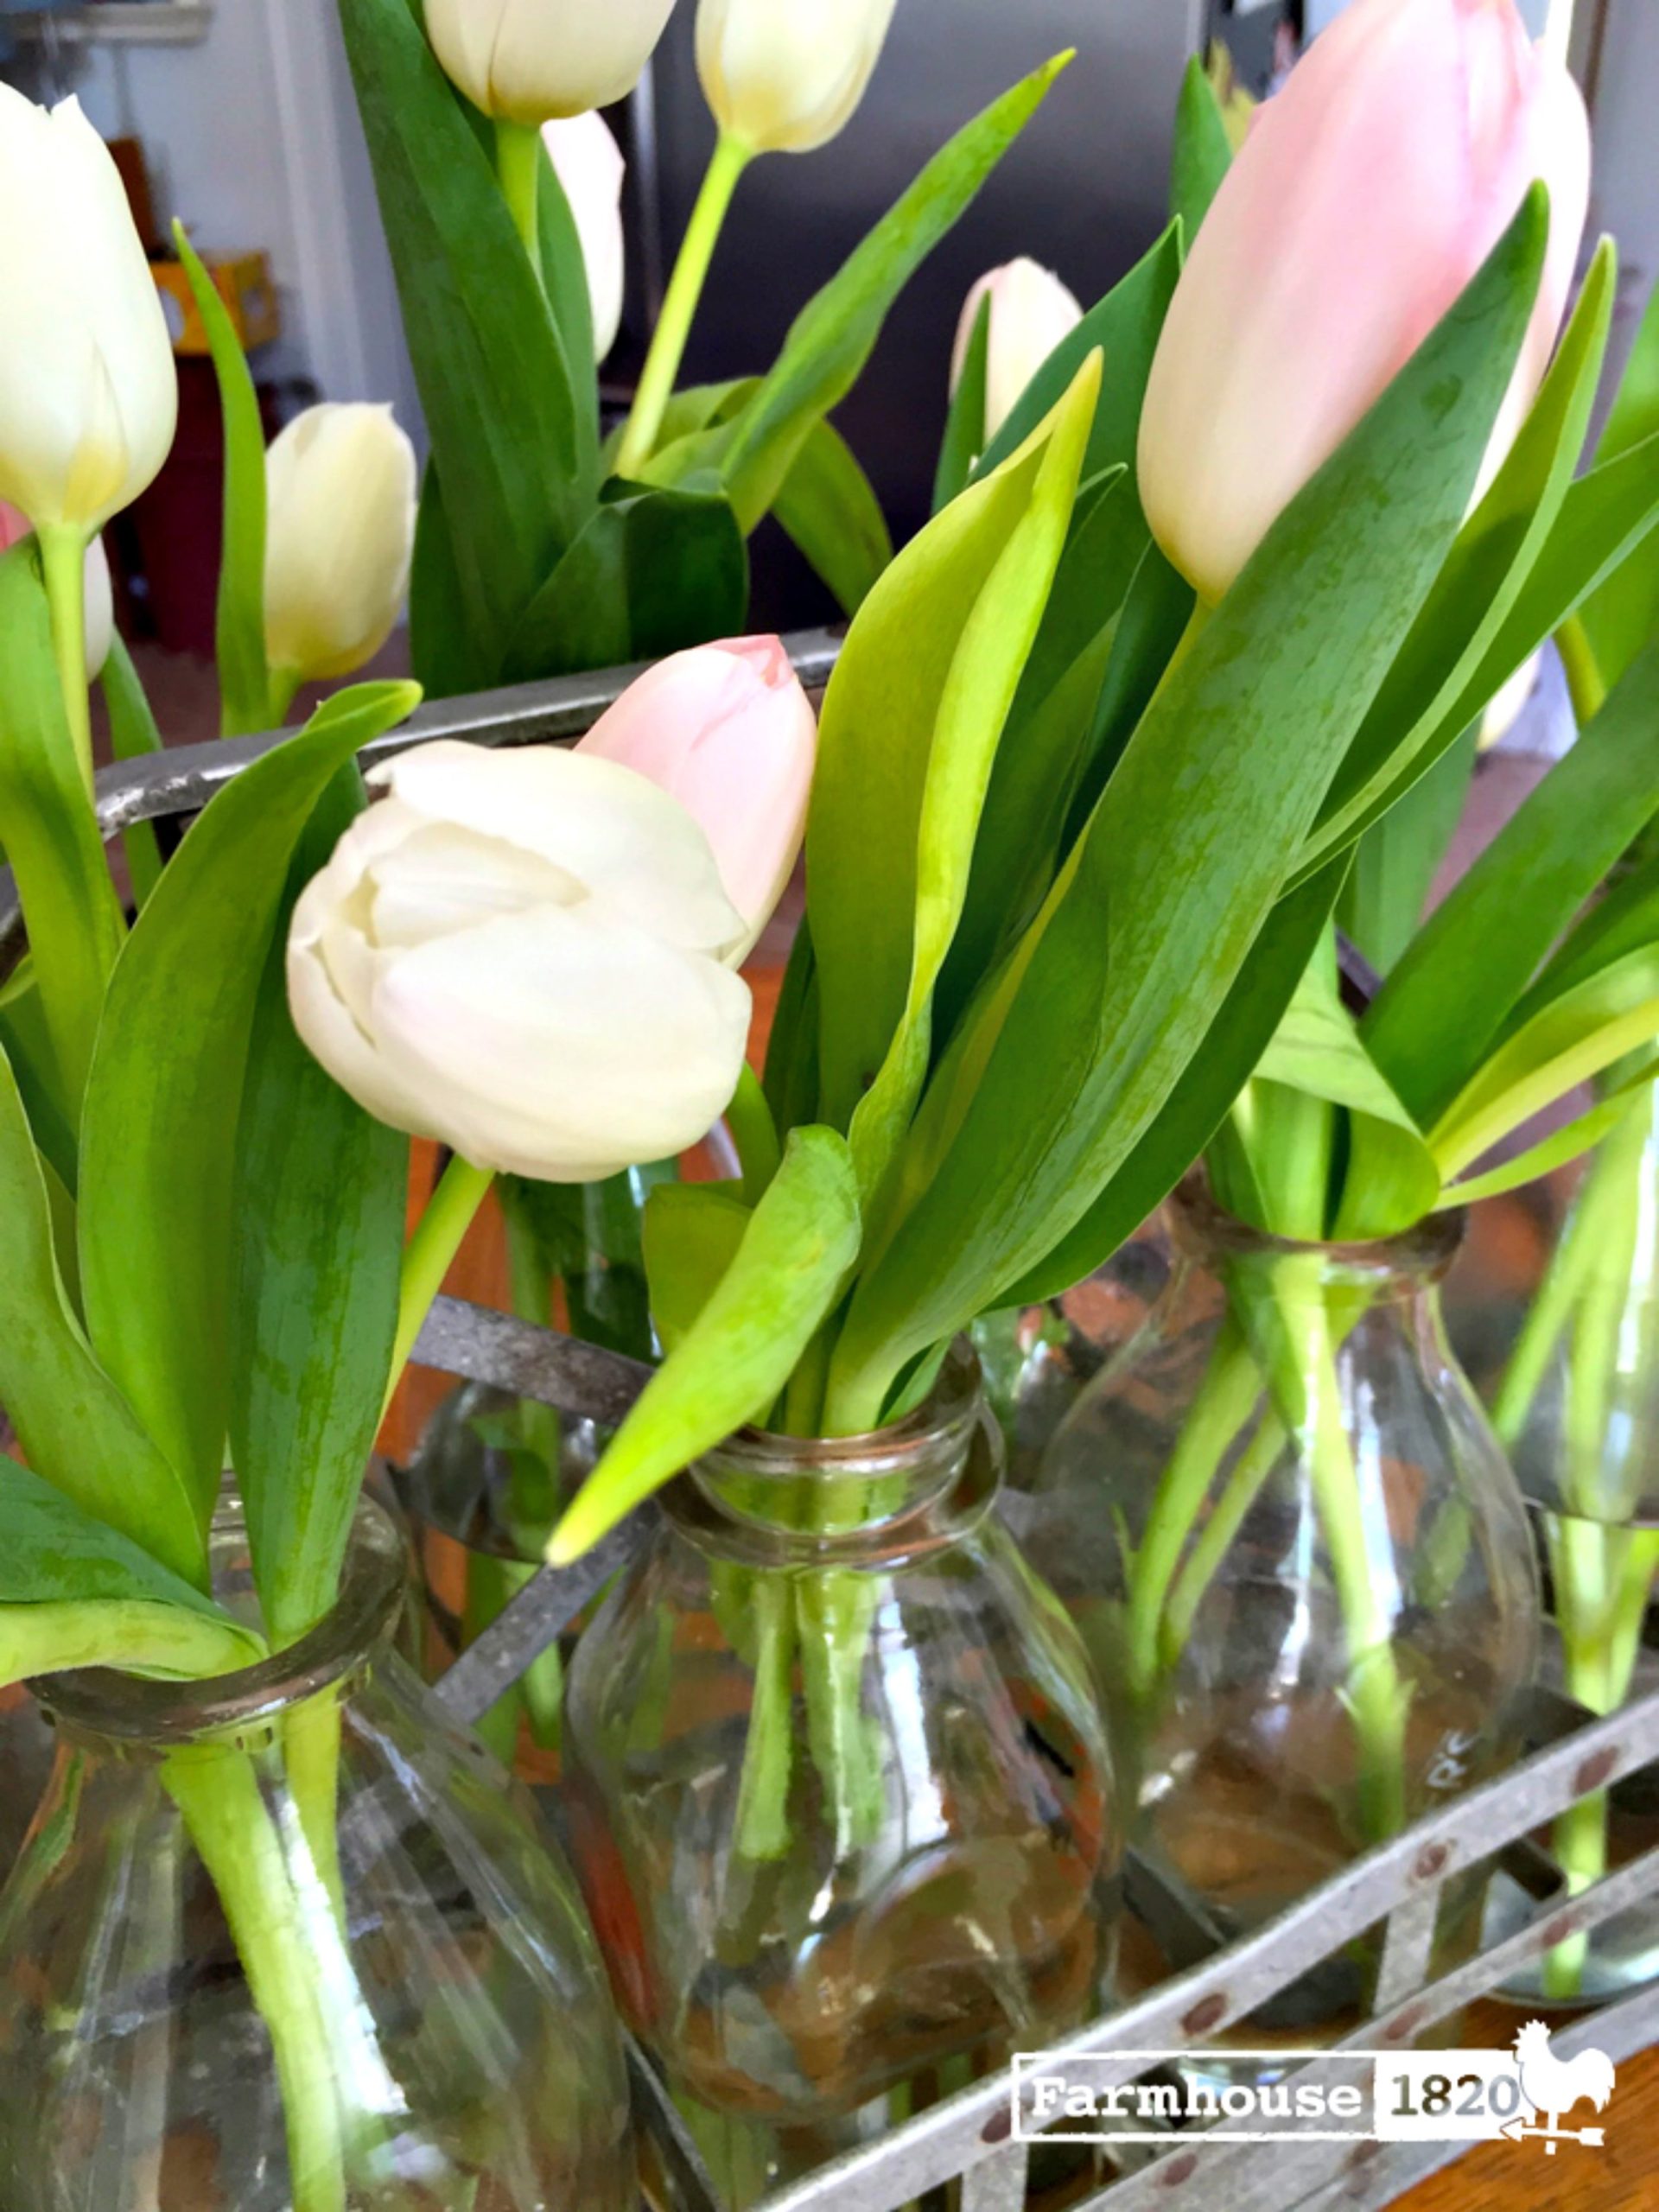 galvanized milk crate - an arrangement of tulips